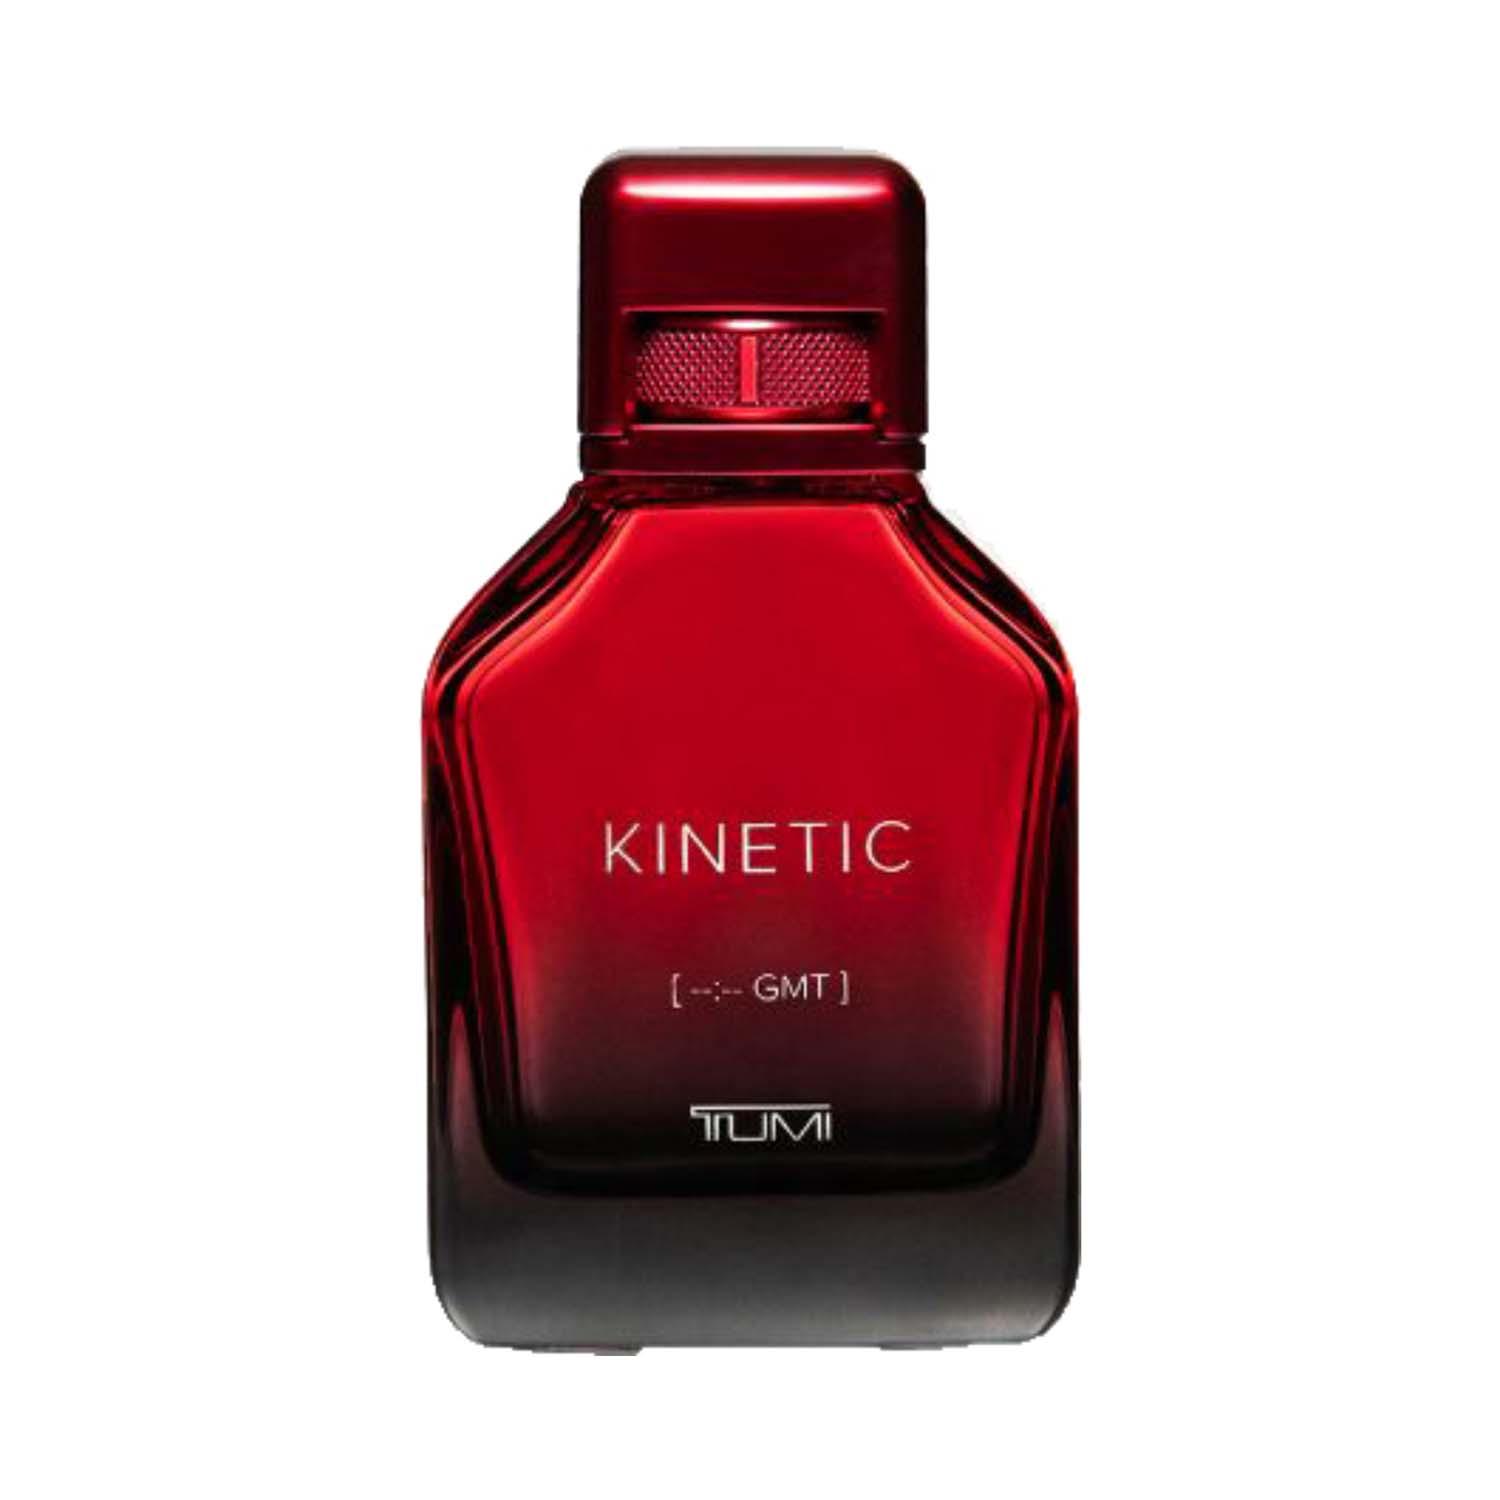 TUMI | TUMI Kinetic [--:-- GMT] Eau De Parfum For Men (100 ml)